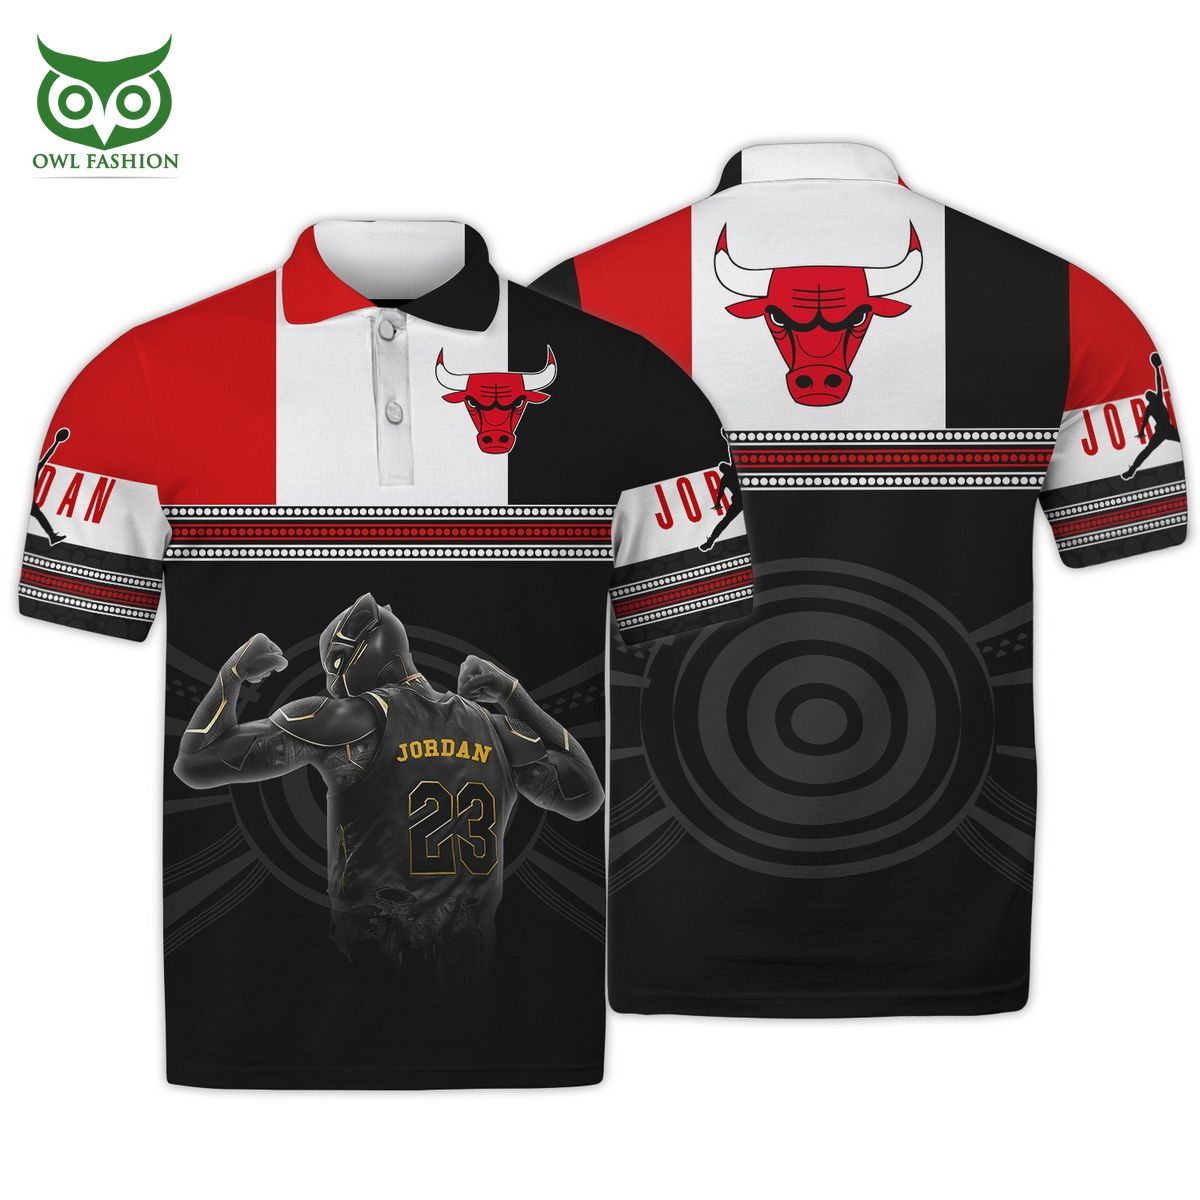 Black 23 Bulls Oversize Drop Shoulder T Shirt – Tshirtly